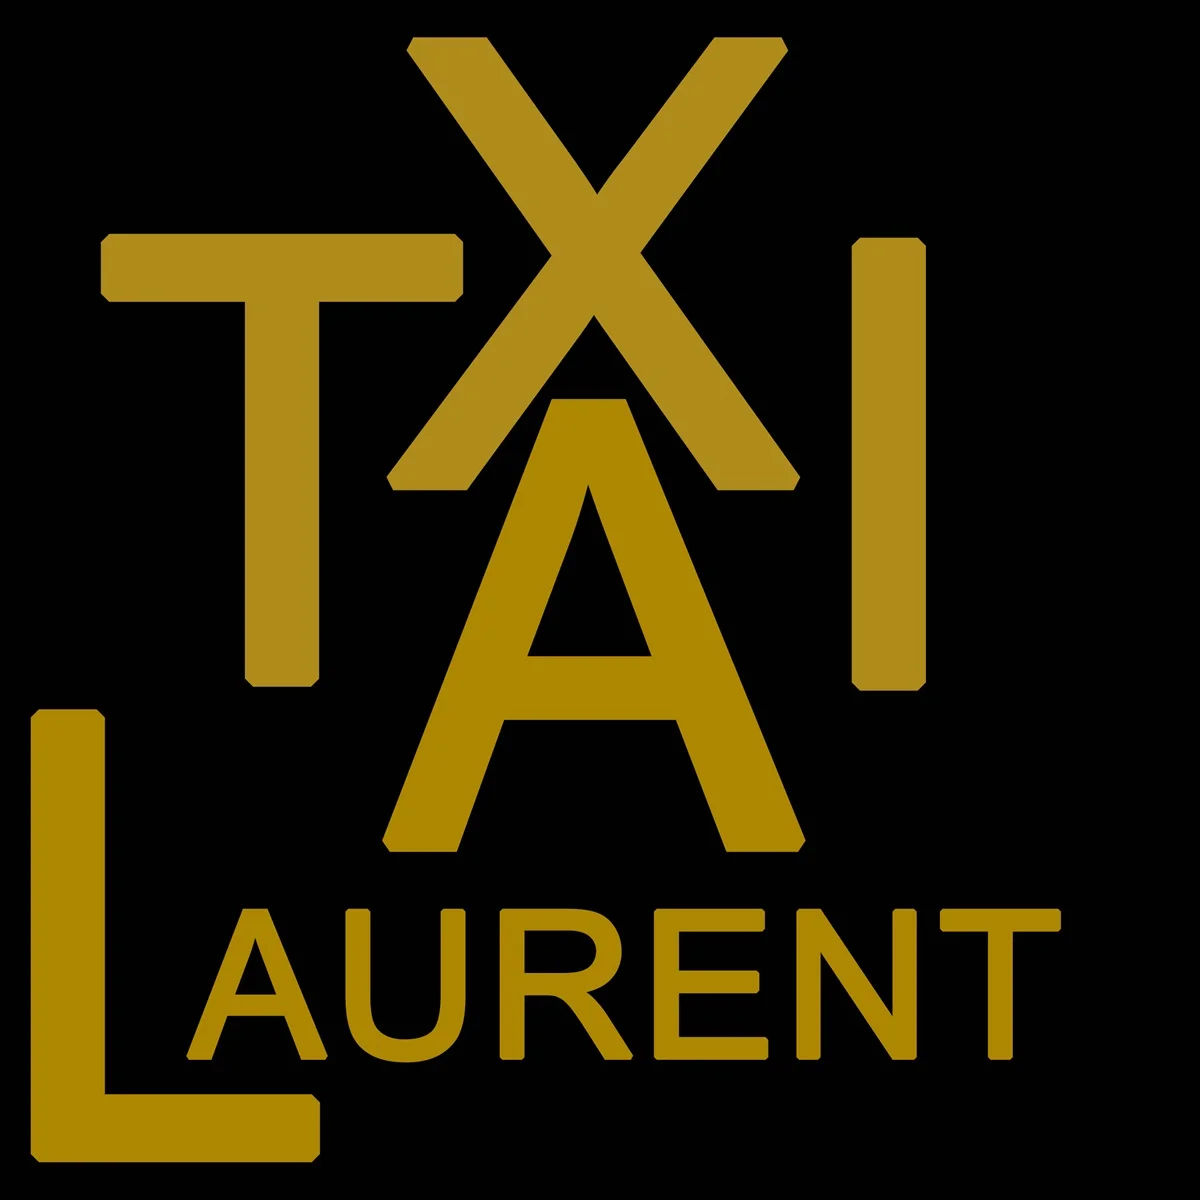 logo taxi LAURENT DAYRAUT moderne or et noir